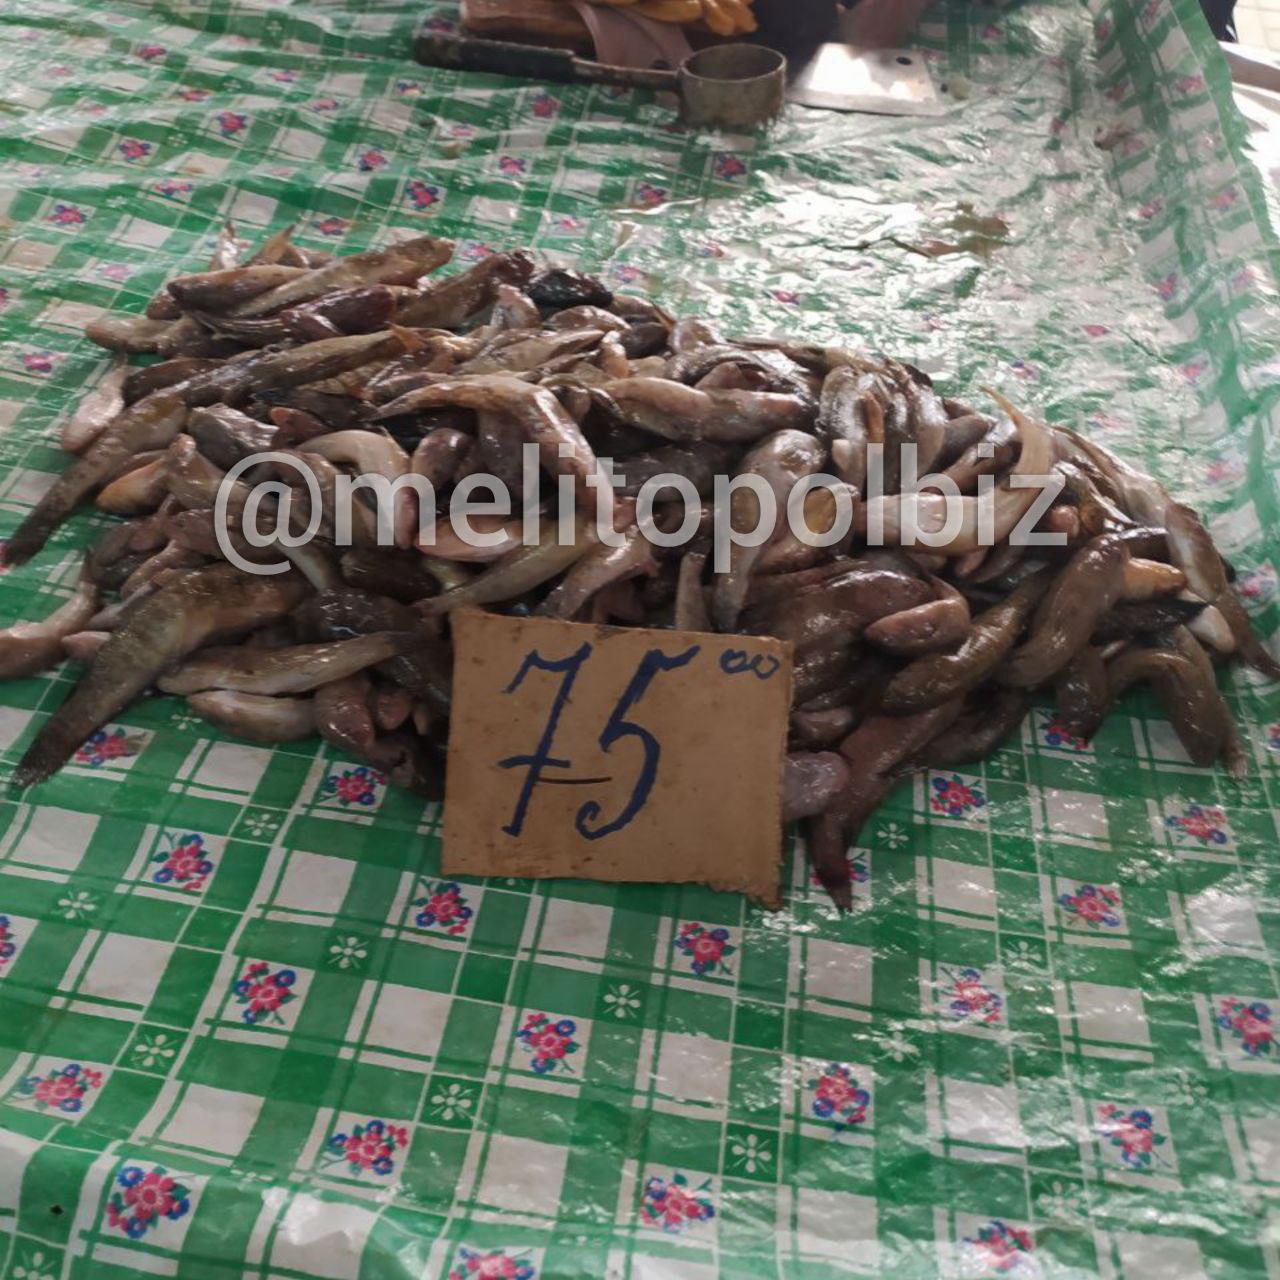 Сколько стоит на рынке в Мелитополе свежая рыба 3